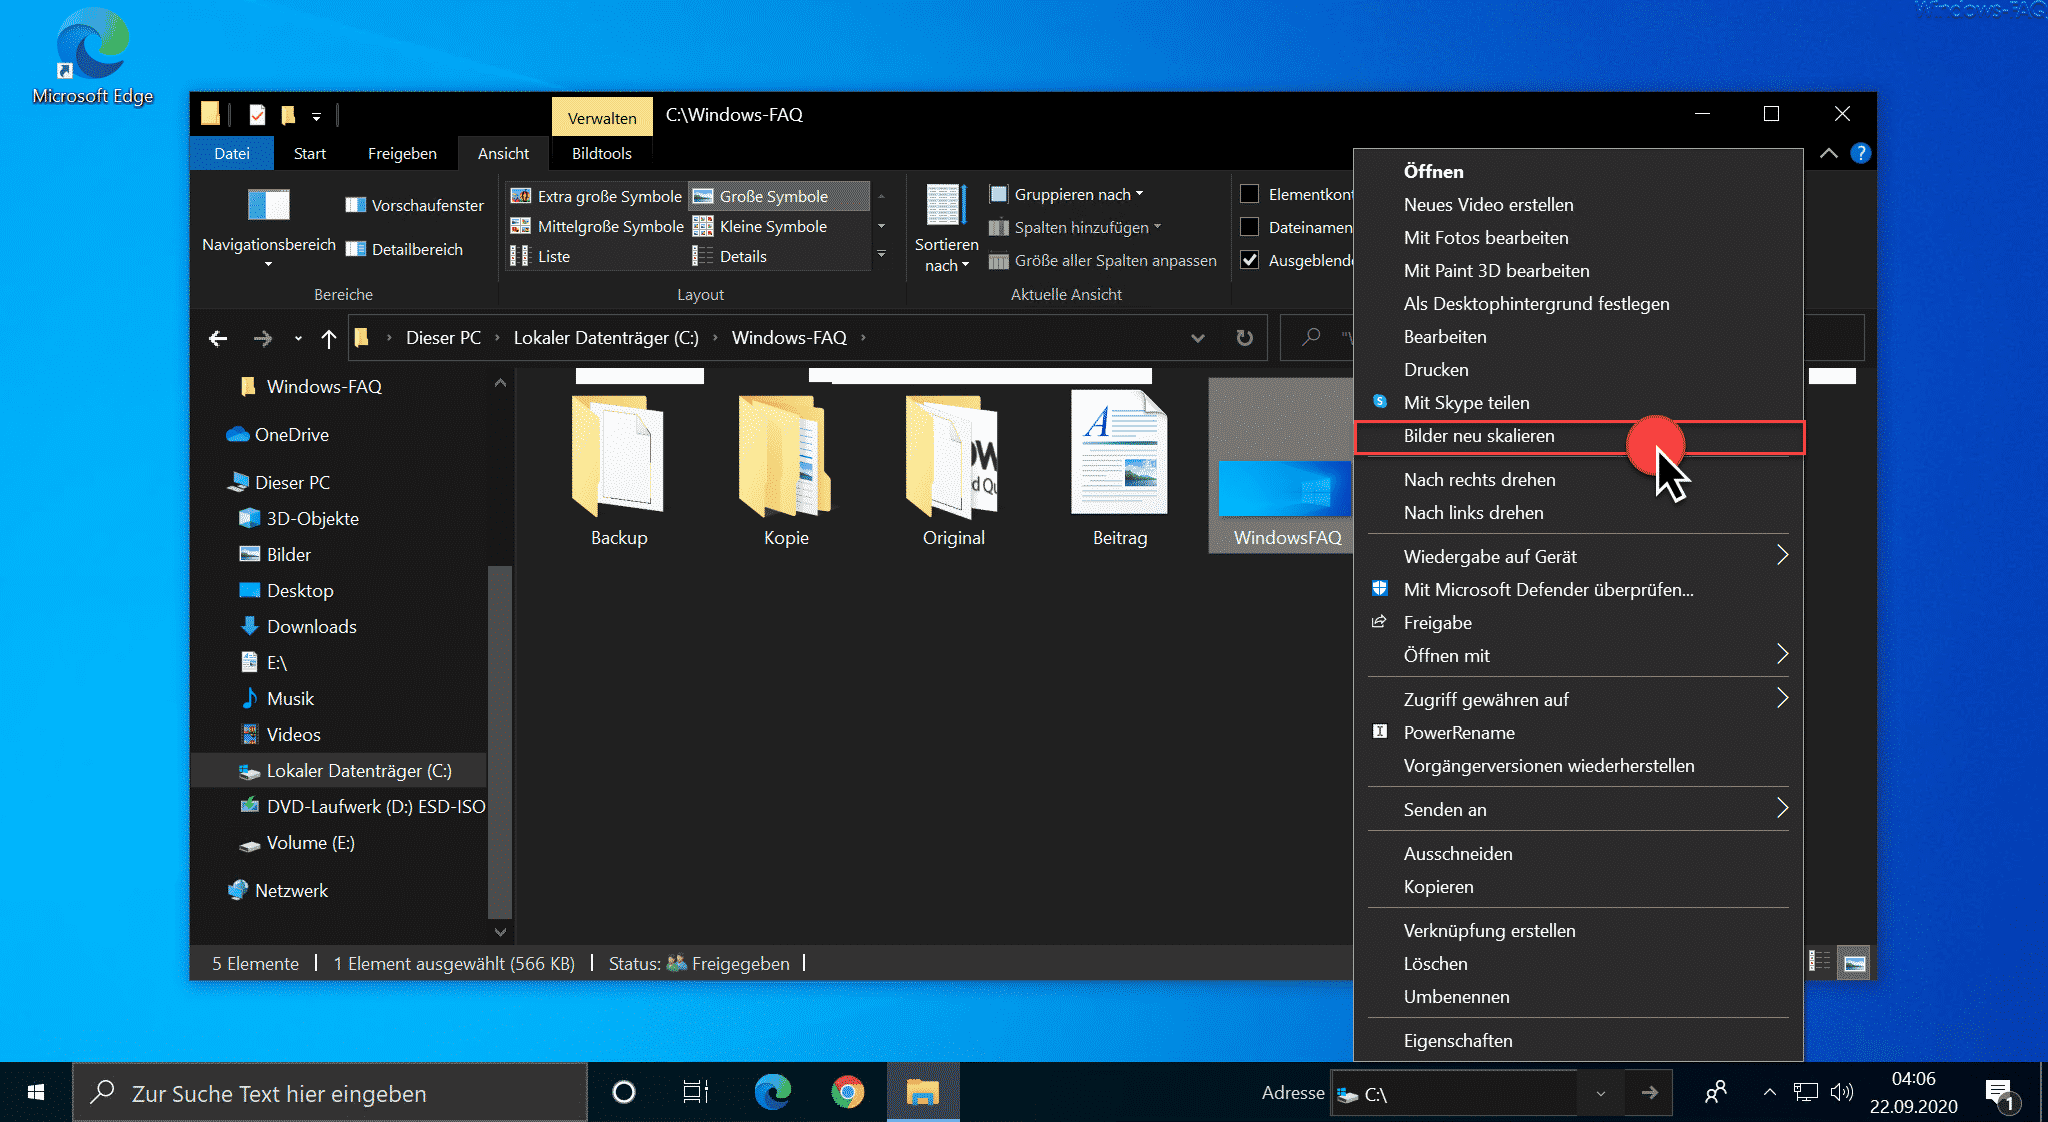 Jpg Datei Verkleinern Windows 10 / Datei Verkleinern So Komprimieren Sie Pdf Jpg Und Co Tipps Tricks - Windows 10 verfügt über eingebaute tools, die ihnen helfen, die fotos mit wenigen klicks zu bearbeiten.